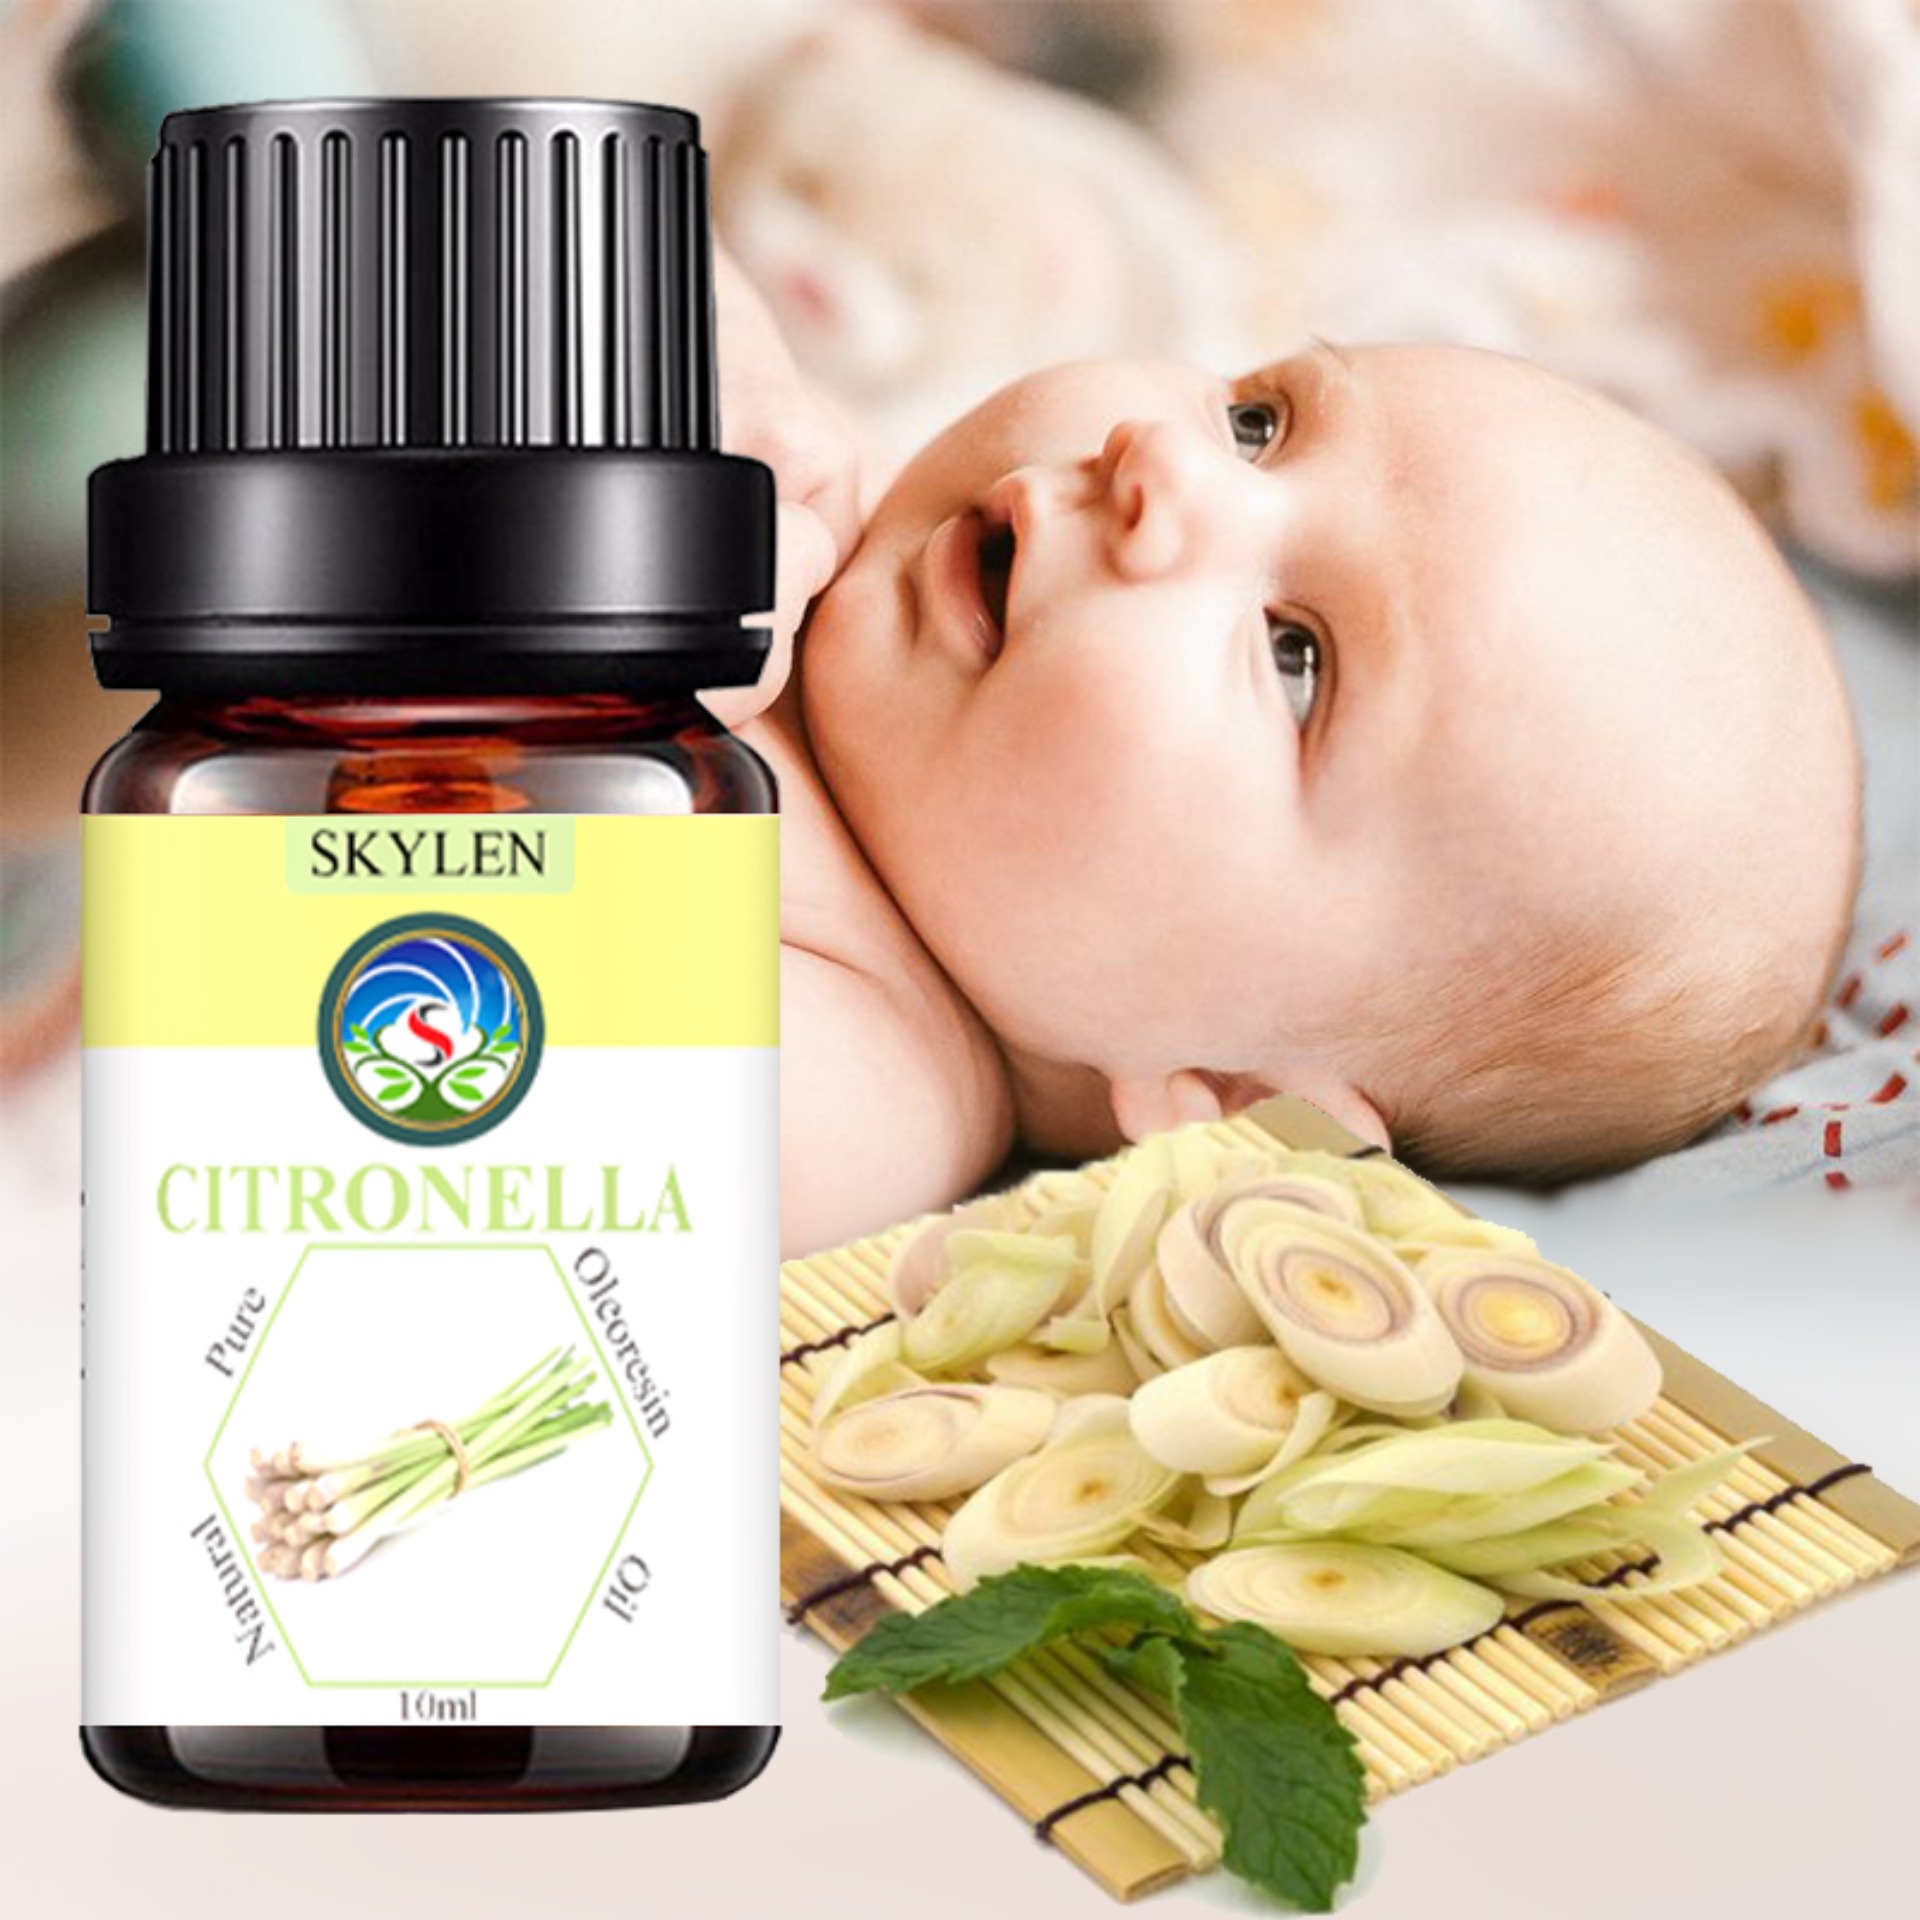 Citronella essential oils of citronella pure mosquito repellent deodorant